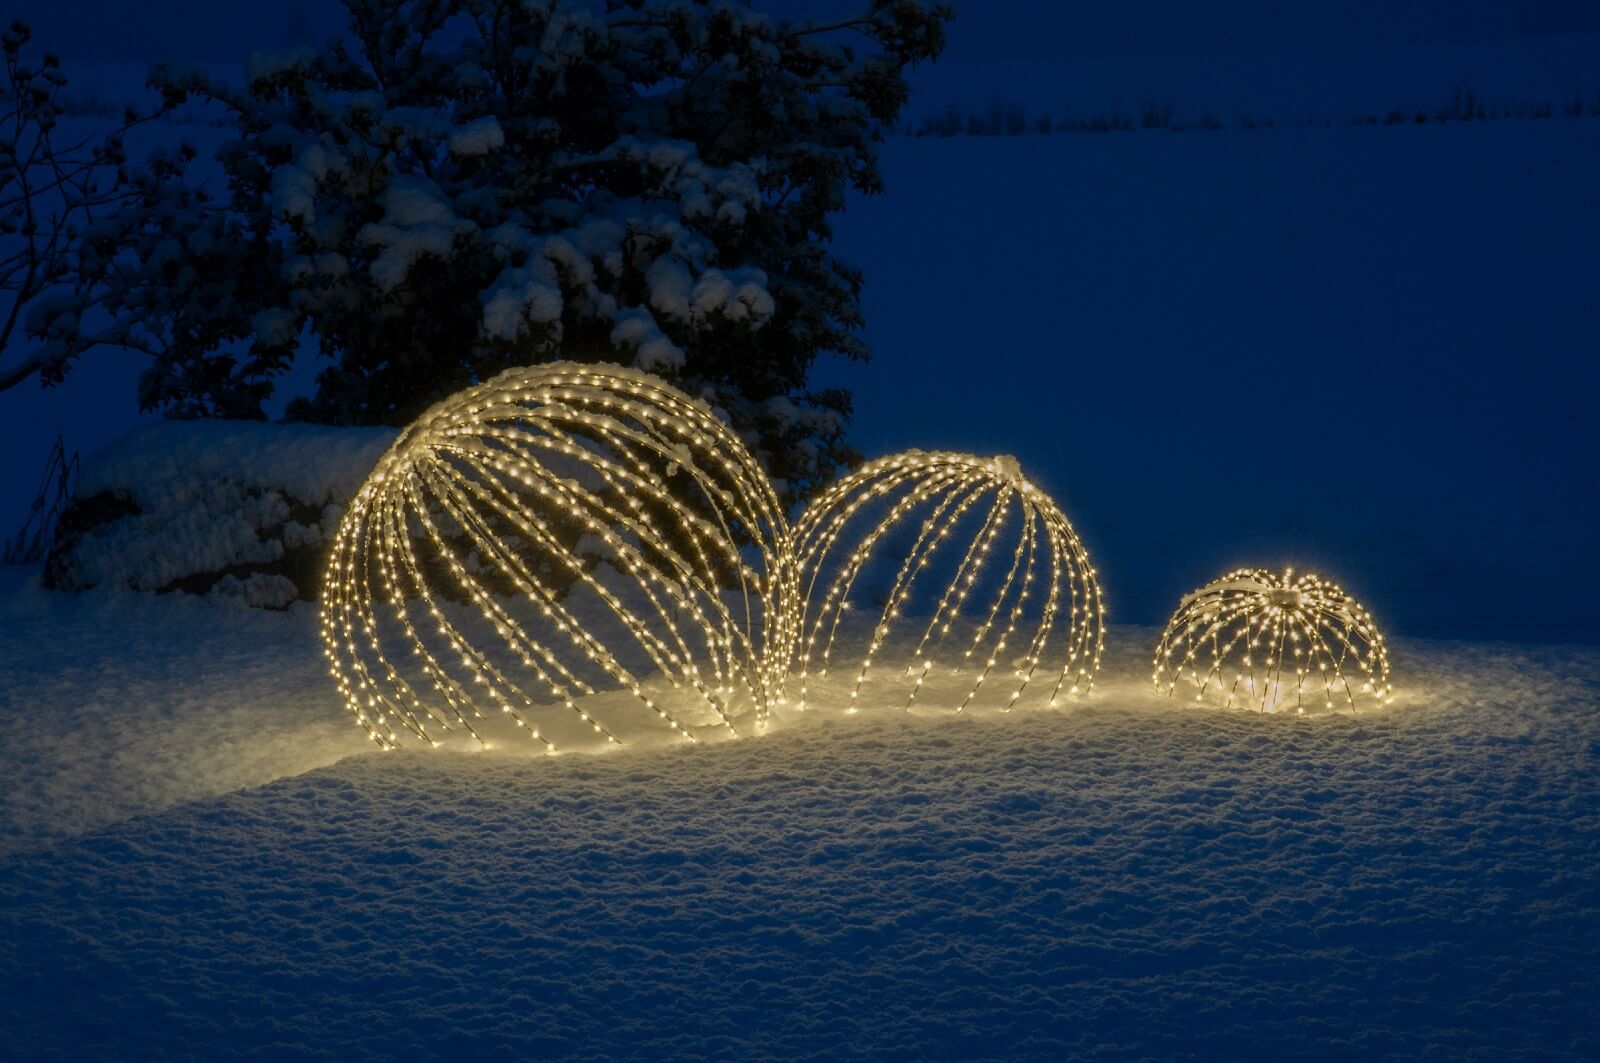 Royal Ball Silber - wunderschöne Weihnachtsbeleuchtung für Indoor und Outdoor - aussergewöhnliche Weihnachtsdekoration, 3er Set (1x40cm, 1x60cm, 1x80cm)